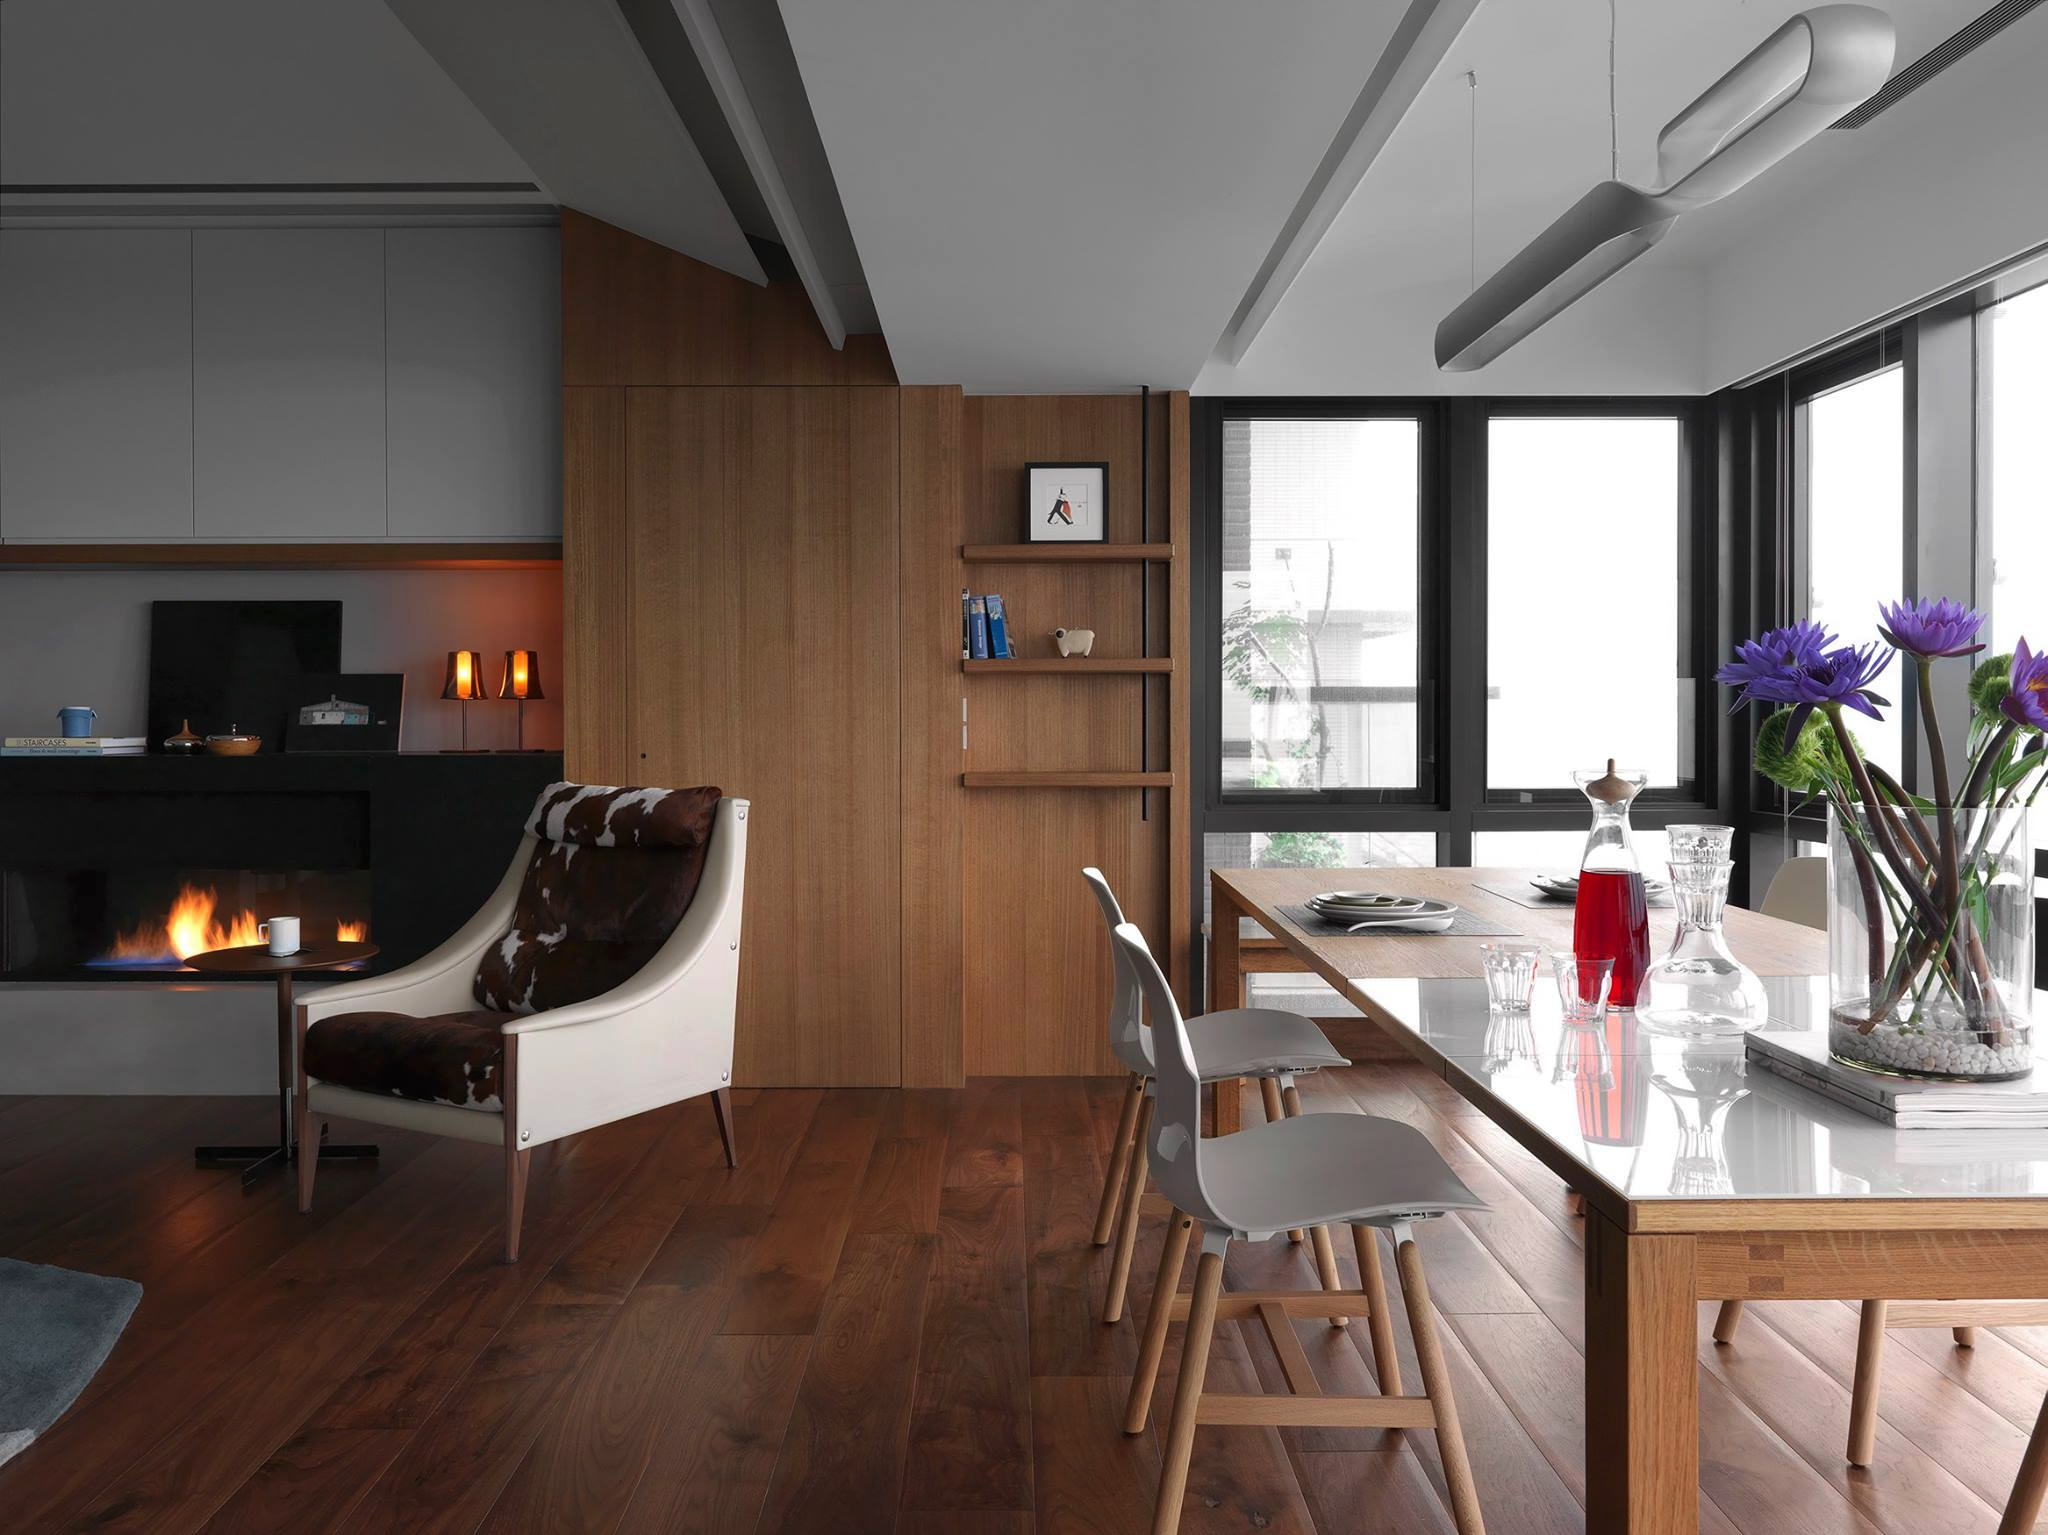 Wedo thiết kế nội thất phòng ăn đơn giản, sang trọng cho nhà hiện đại